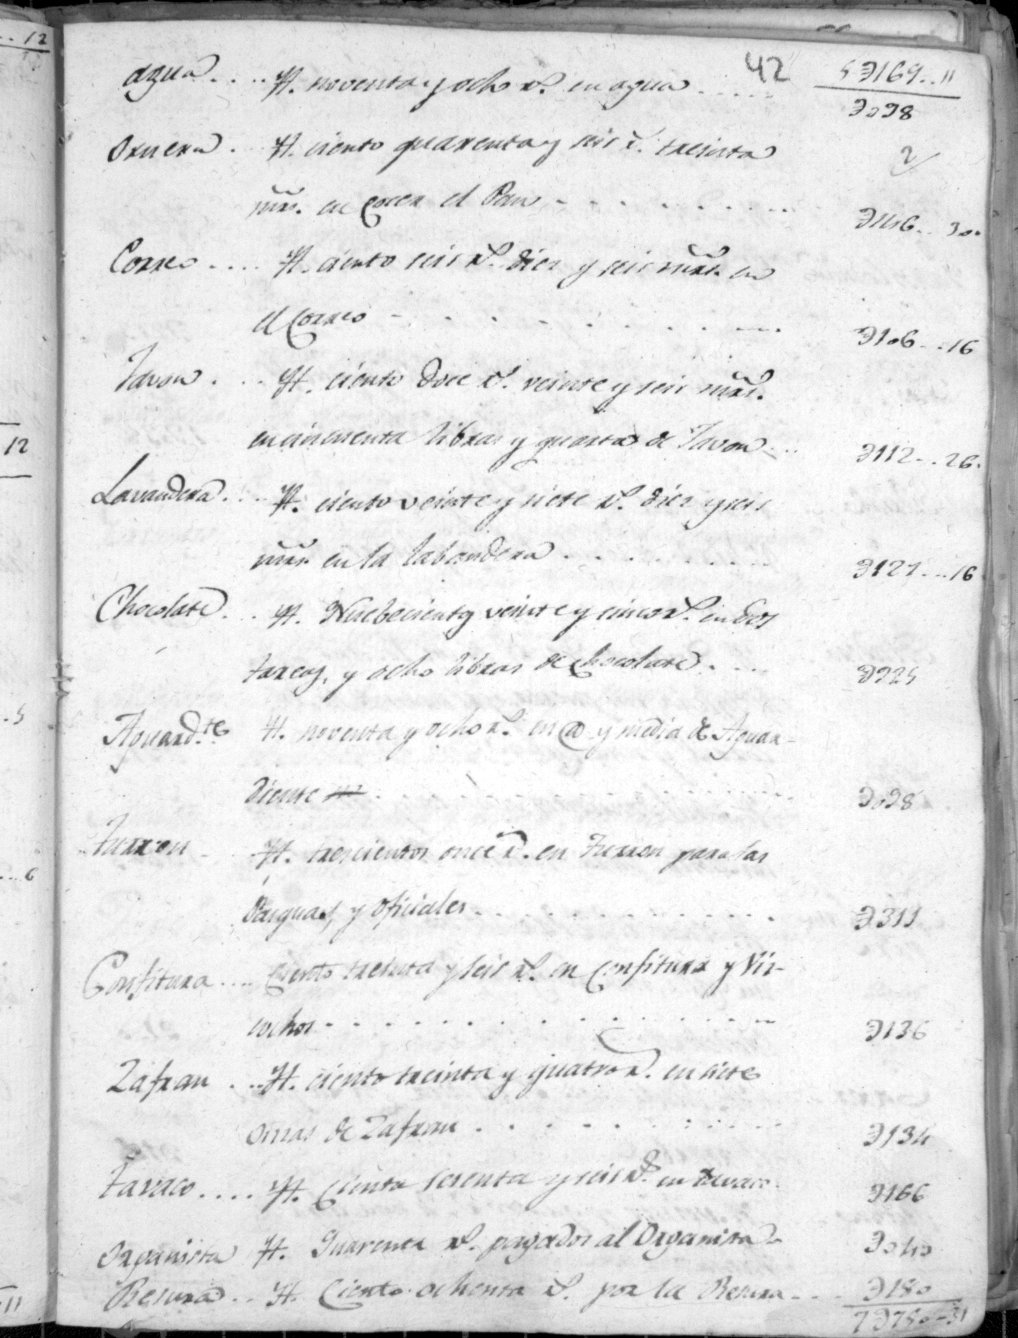 Libro de limosnas del Hospicio de Nuestra Señora de los Ángeles de Calasparra. Años 1815-1833.